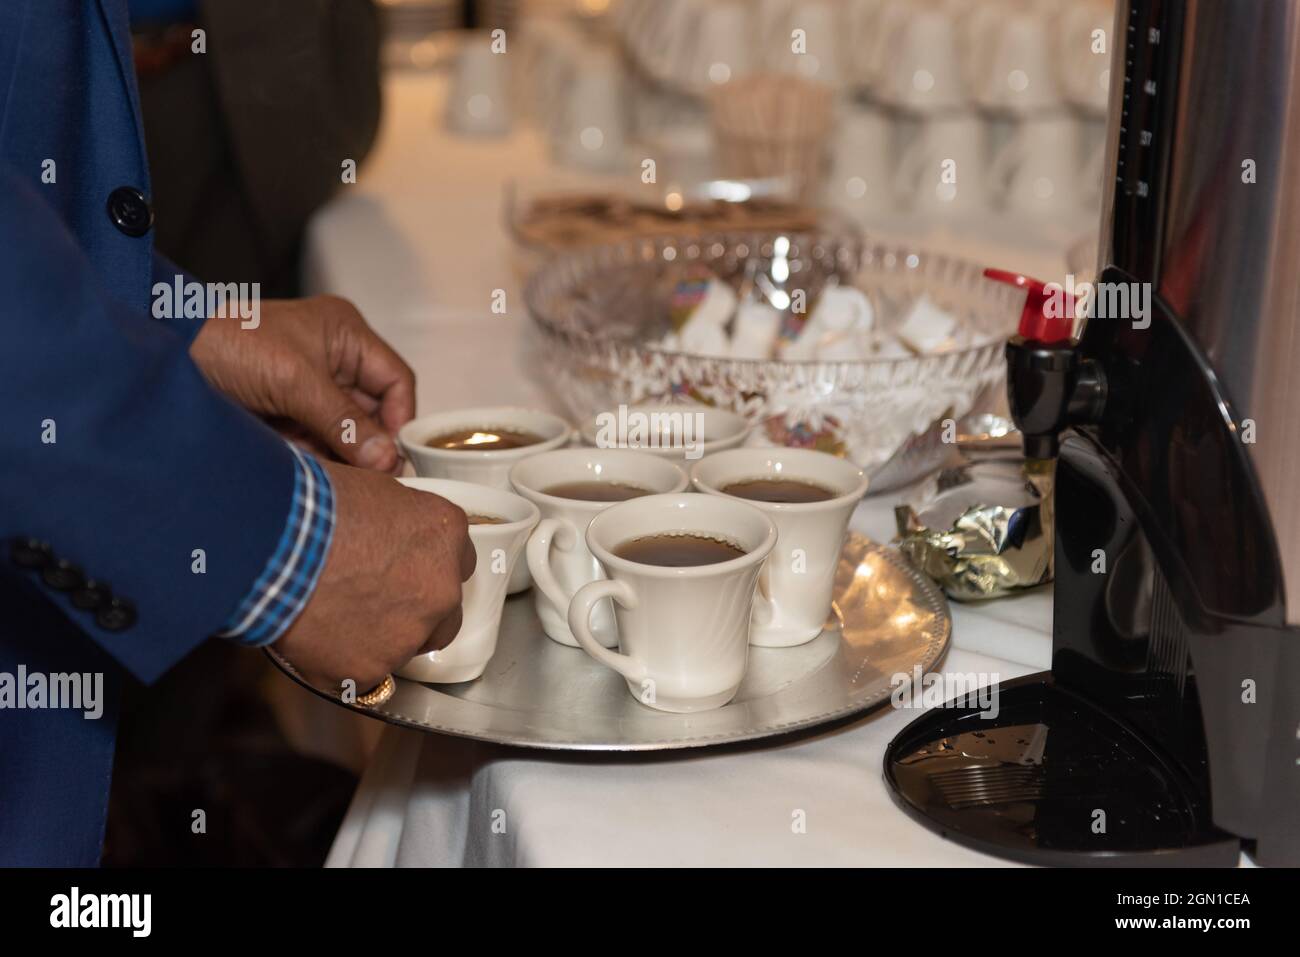 Gebrühter Kaffee auf einem Tablett gestapelt, um ihn zur Familie zu bringen, um ihn bei der Bankett-Dinner-Party zu trinken. Stockfoto